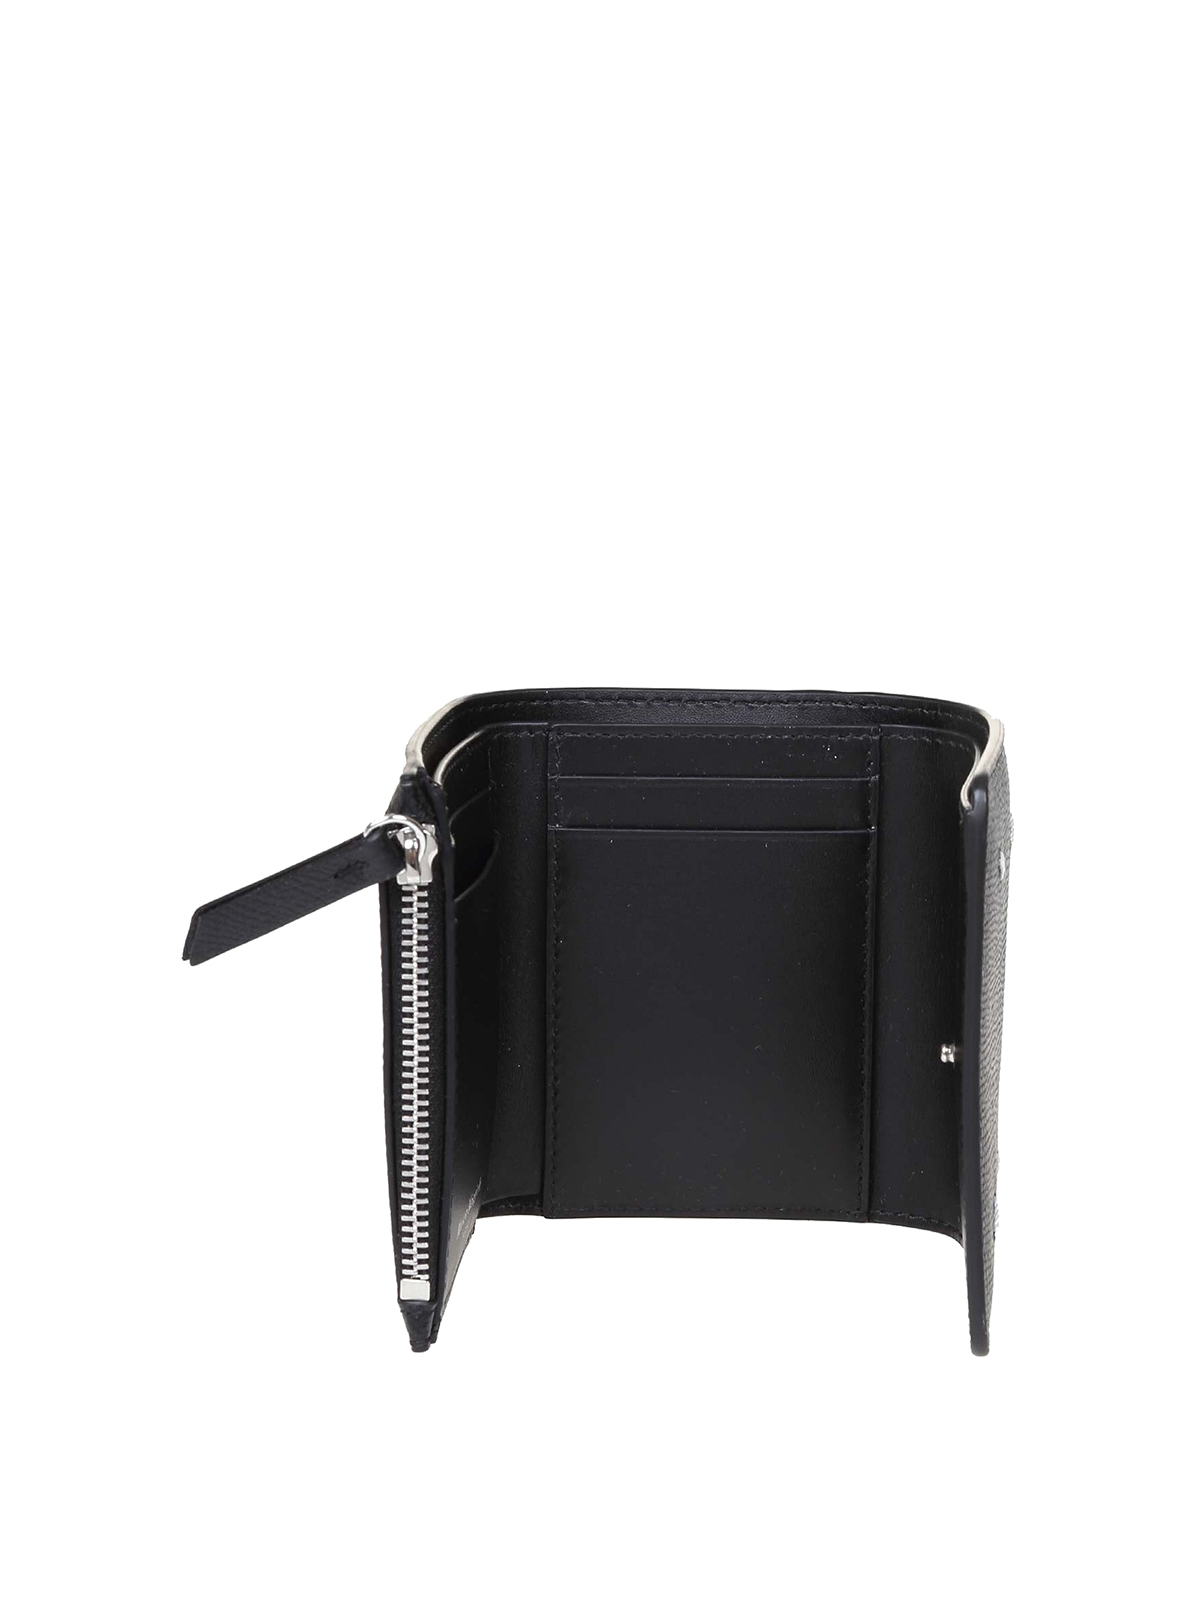 Shop Maison Margiela Black Leather Wallet